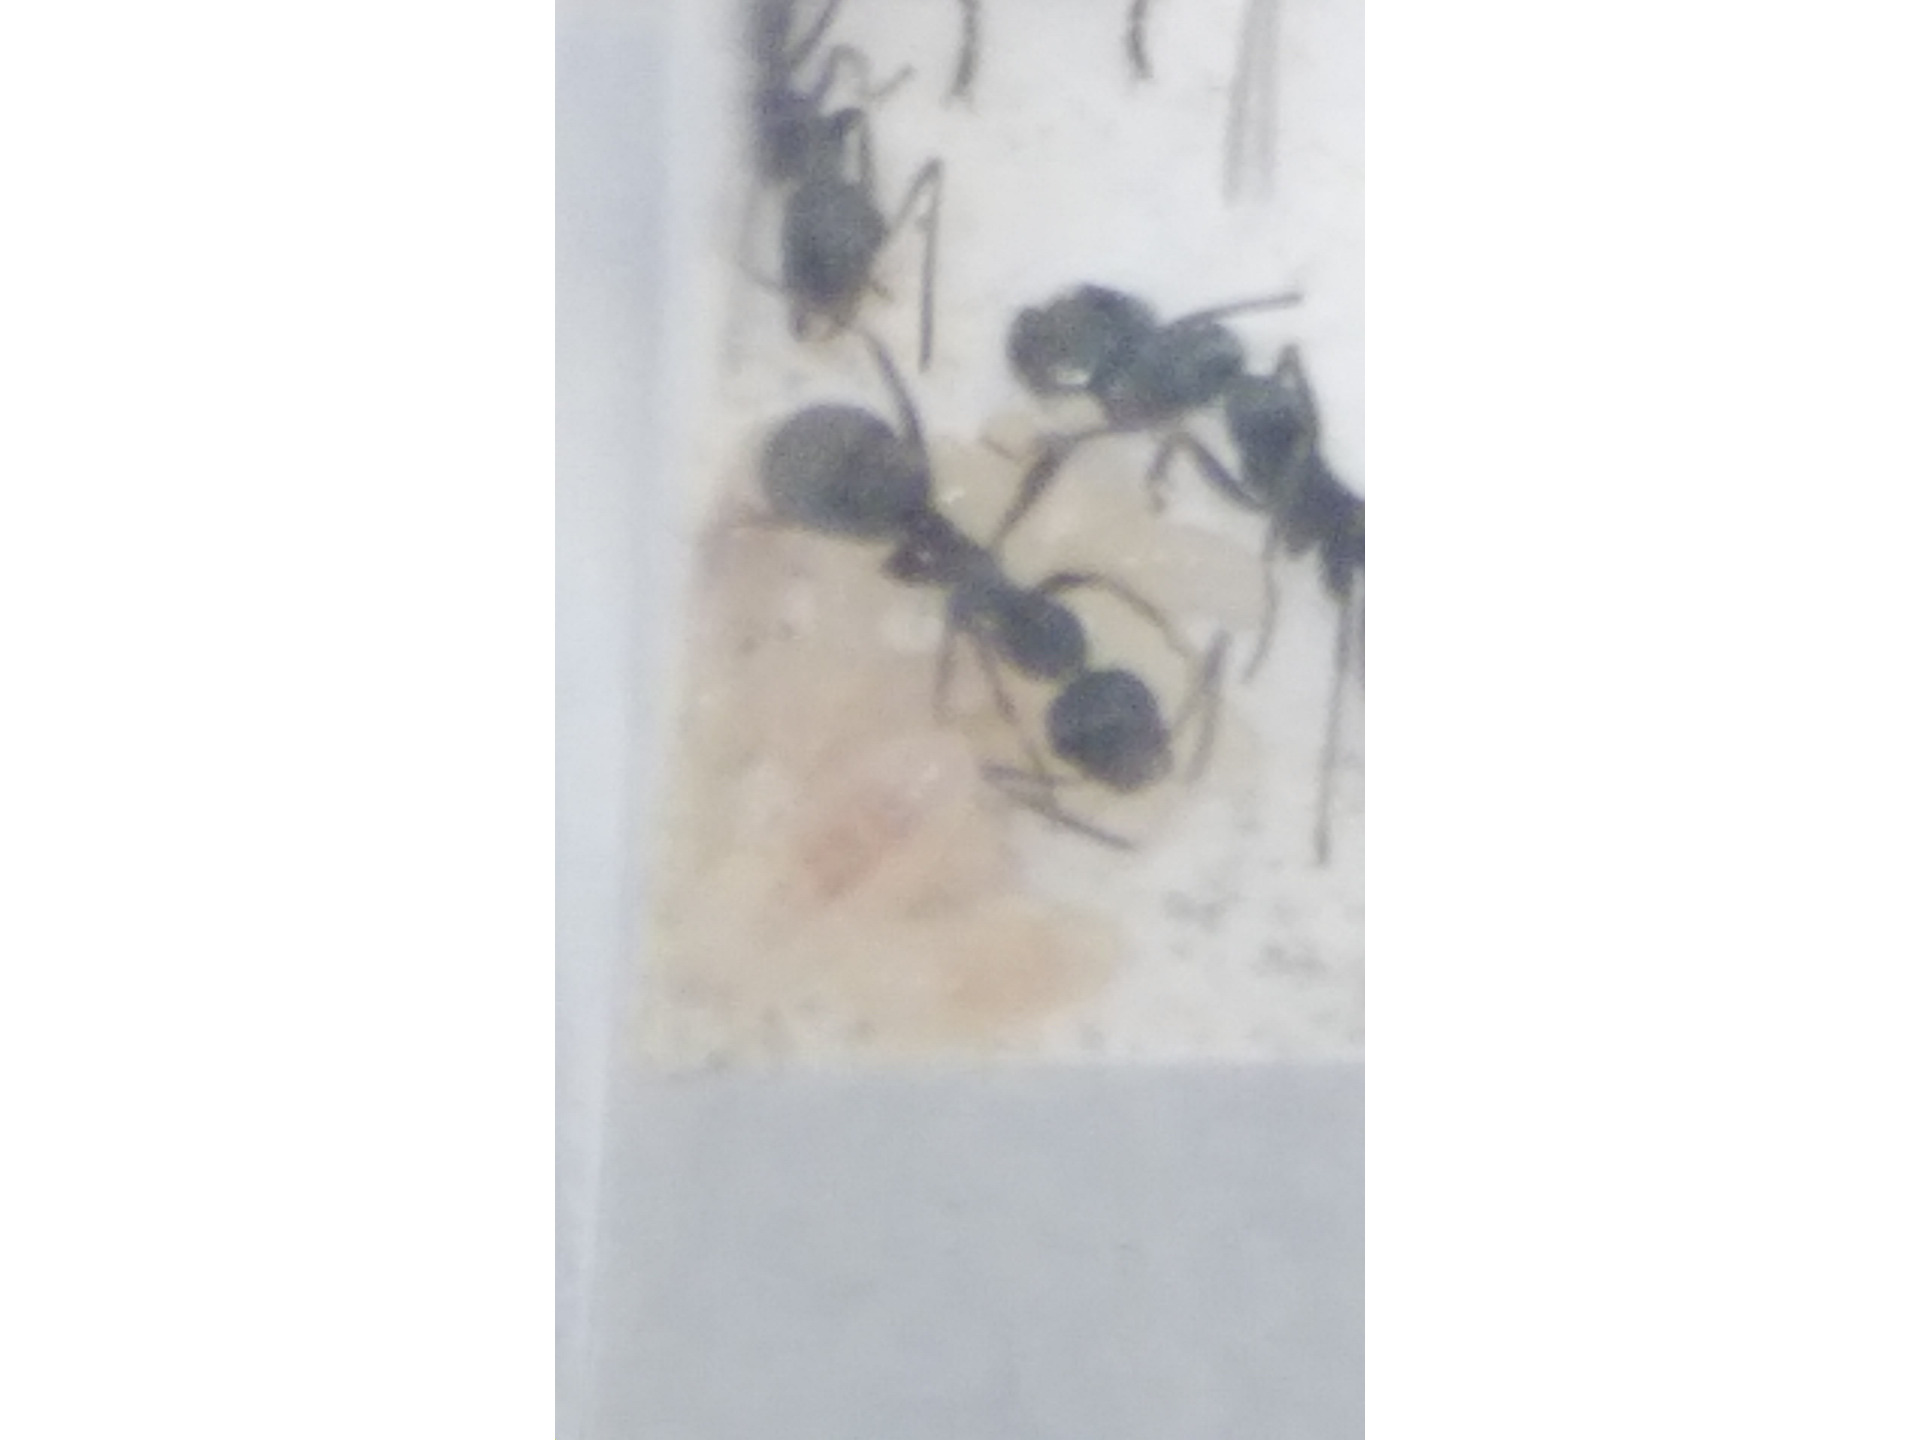 クロヤマアリの飼育方法 ありんこコミュニティフォーラム 蟻の同定や飼育についての交流サイトです アリさんの飼育に関する知識や同定といった情報の共有をしましょう ありんこコミュニティフォーラム